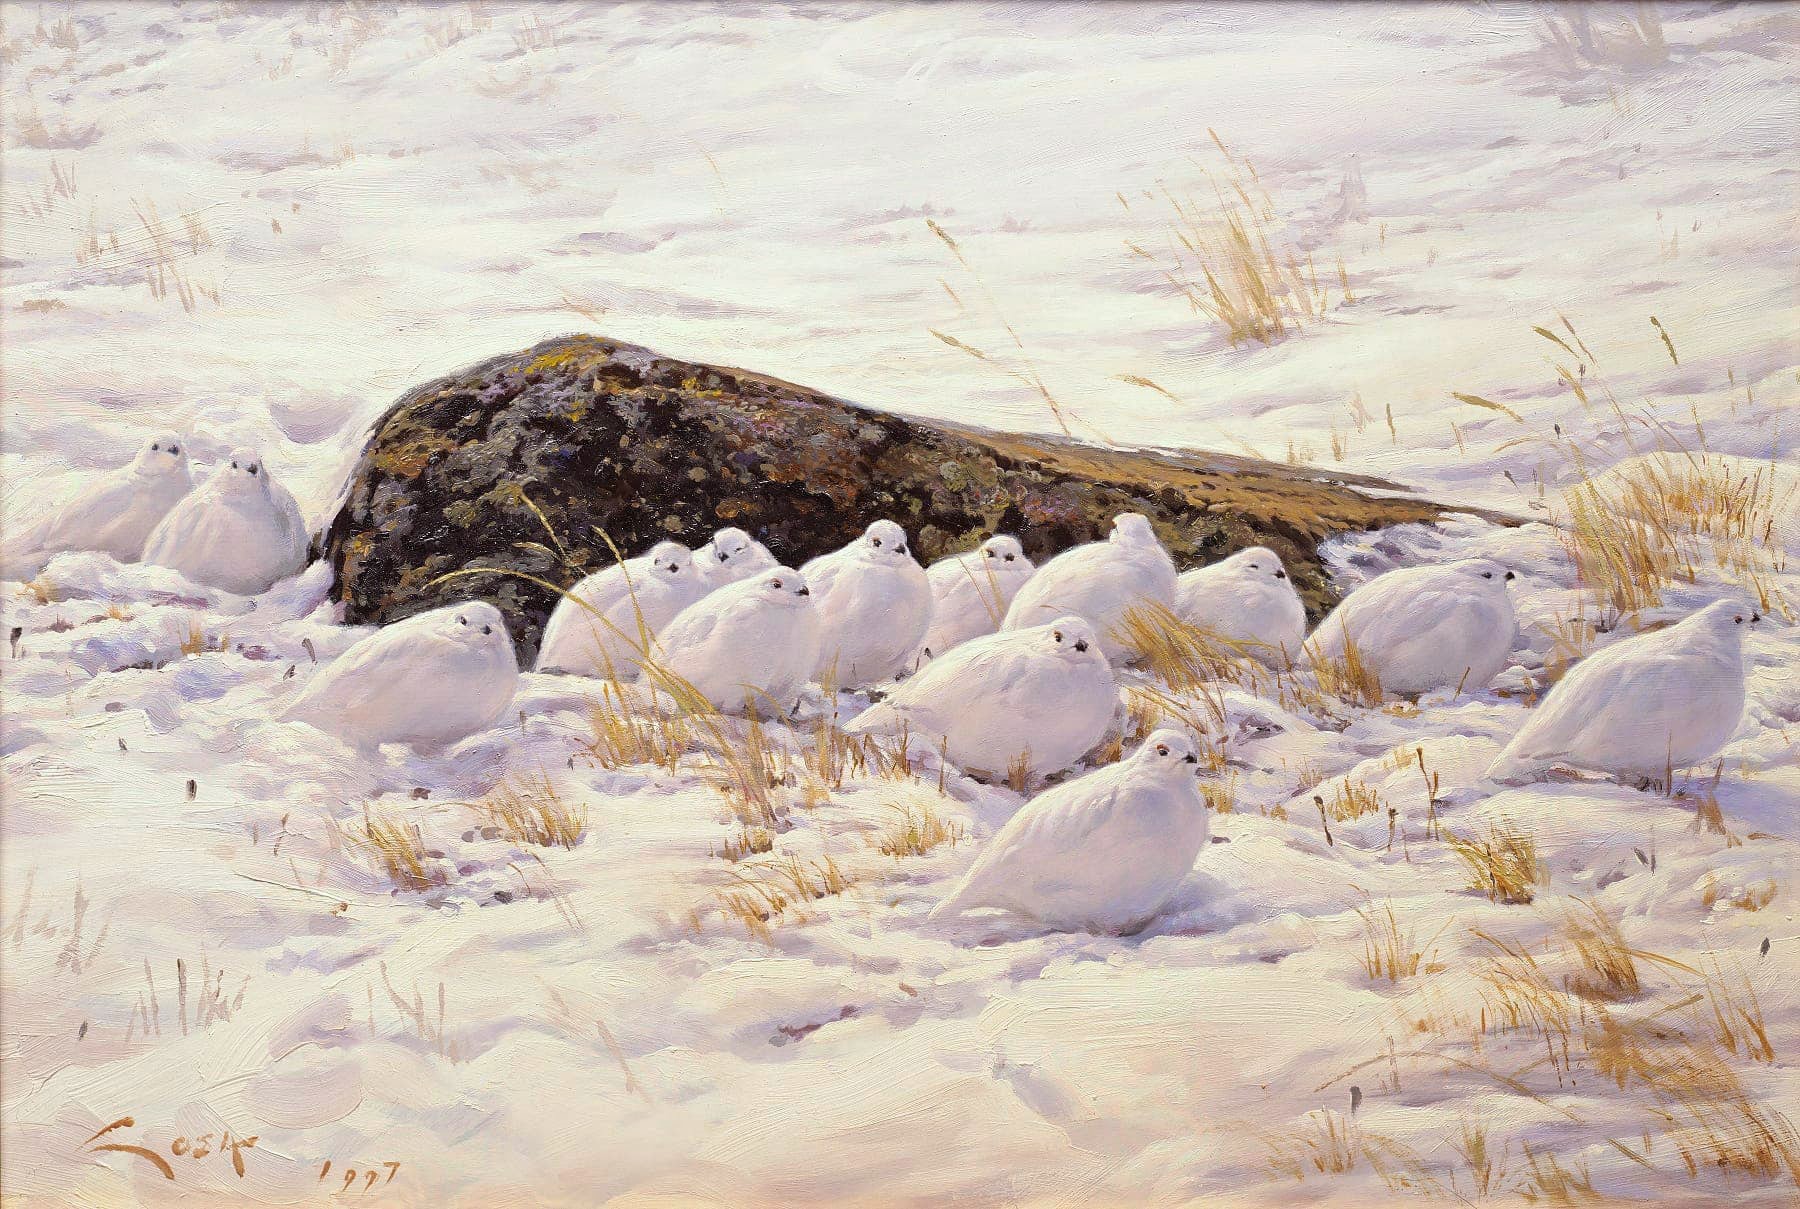 Gemälde des Alpenschneehuhns (Lagopus mutus) in den Hochpyrenäen. Gemälde eines Schneehuhns